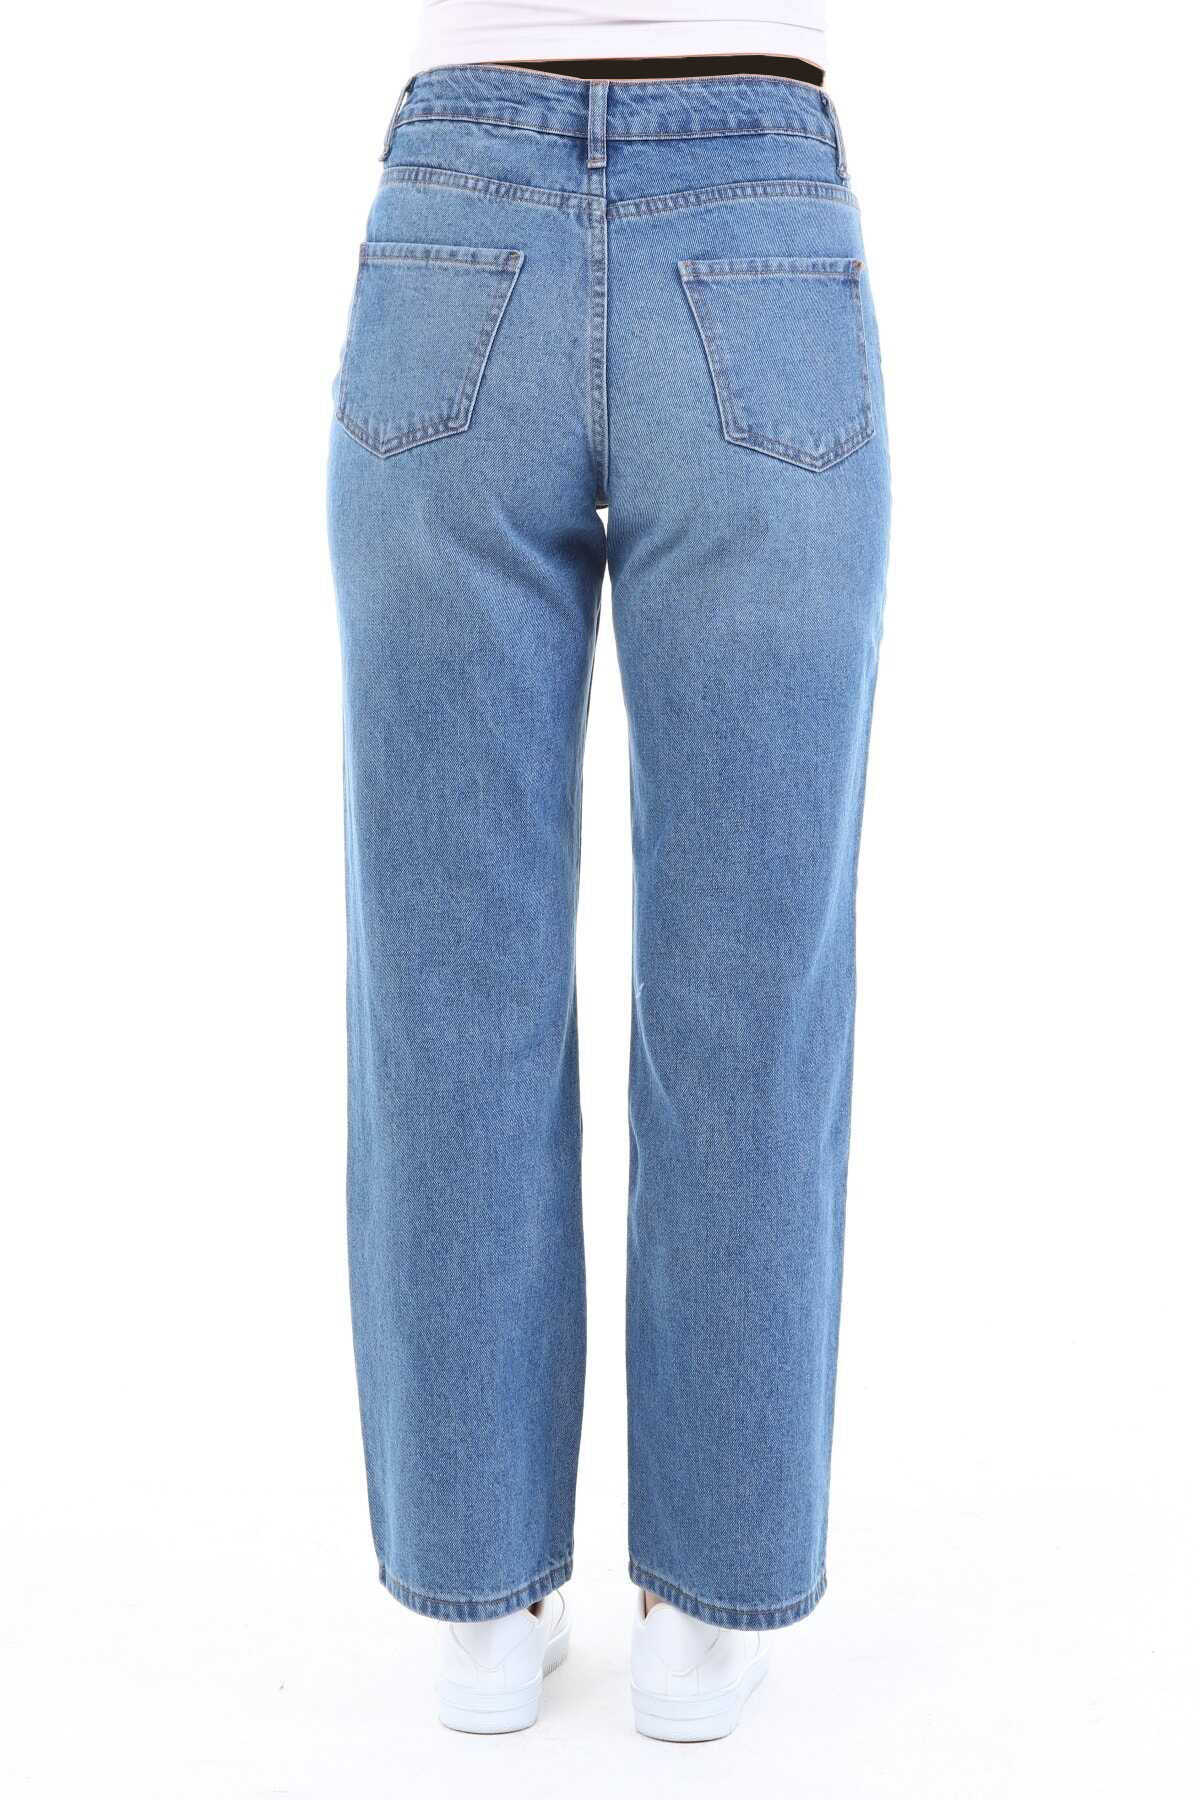 شلوار جین دمپا گشاد سایز بزرگ زنانه آبی روشن برند CEDY DENIM